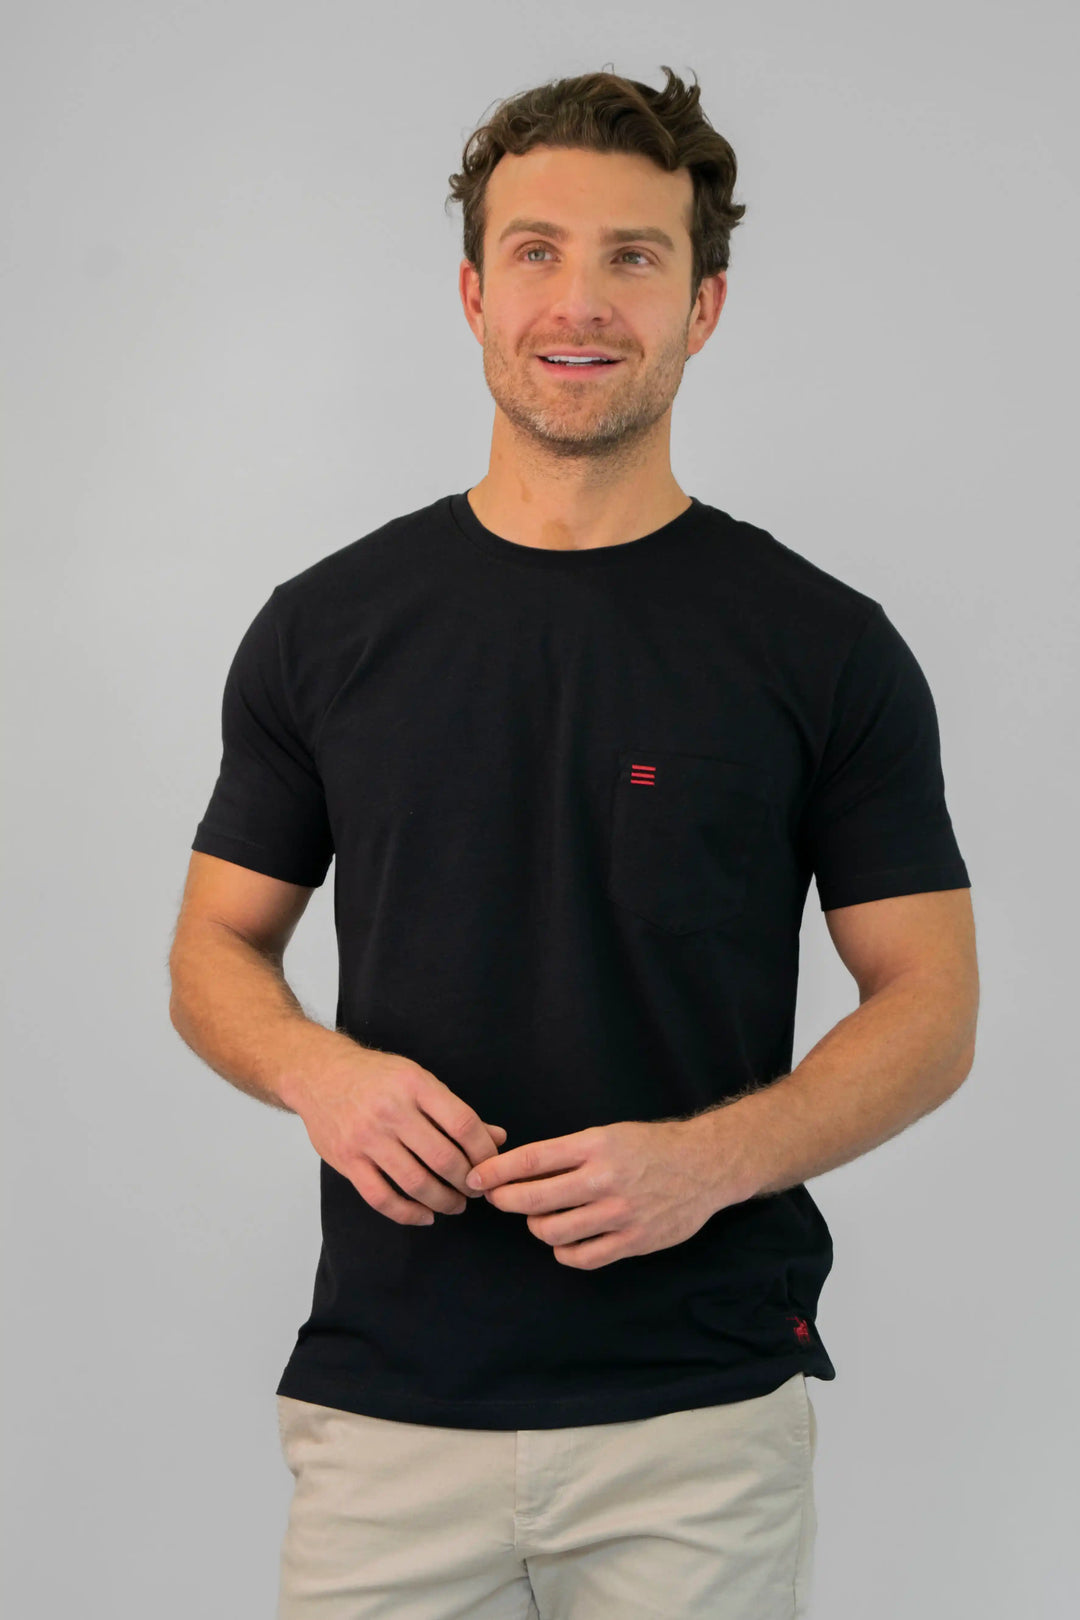 Camiseta negra, manga corta, cuello redondo, bolsillo frontal en el pecho y logo de la marca Armatura bordado en la parte inferior.